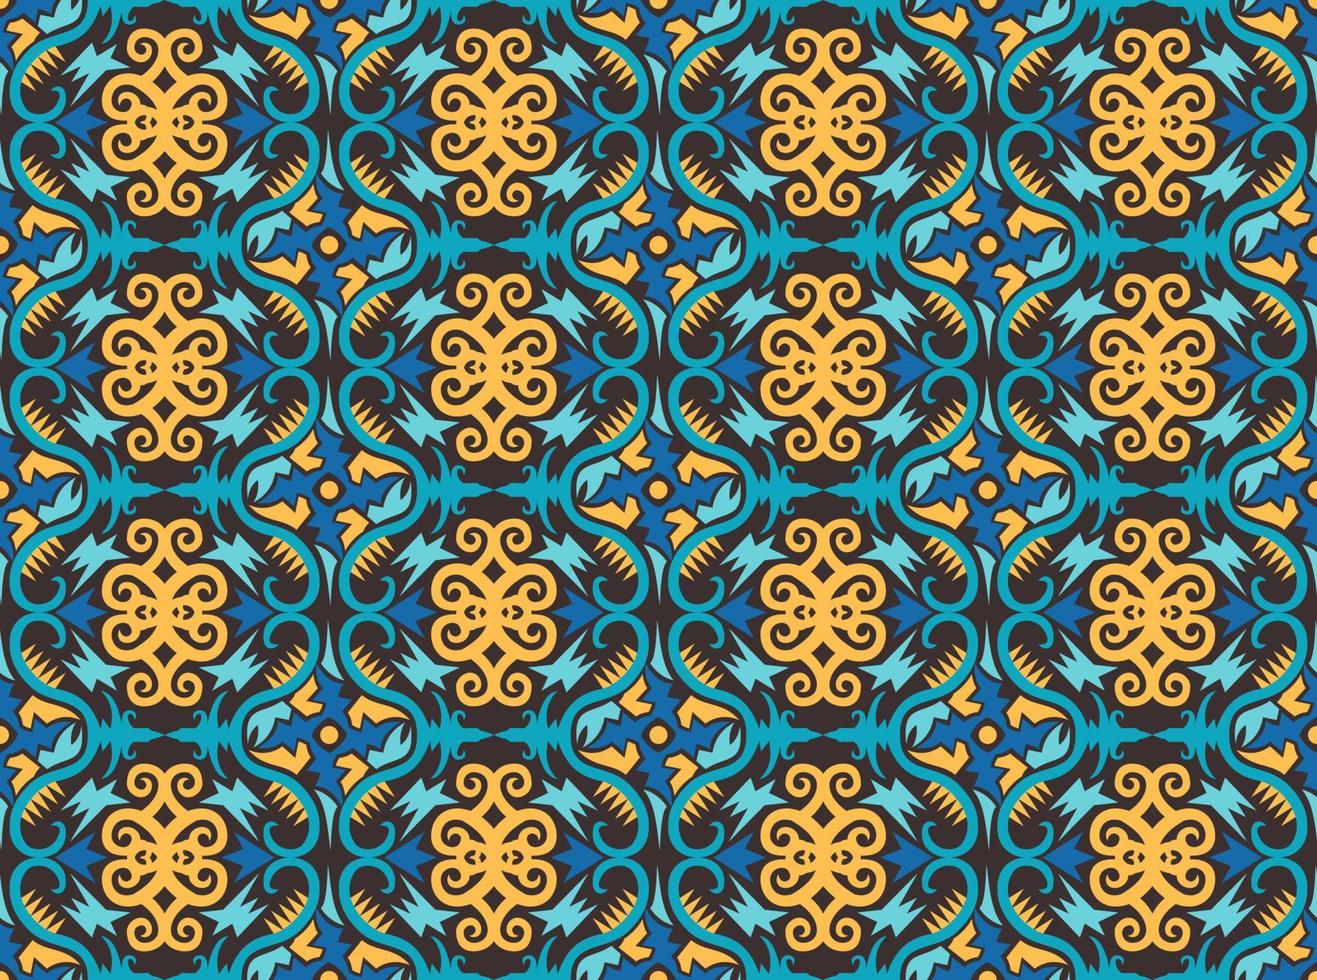 patrón sin costuras de patrón étnico dayak.motivo de tela indonesia tradicional.patrón de borneo. inspiración de diseño vectorial. textil creativo para moda o tela vector